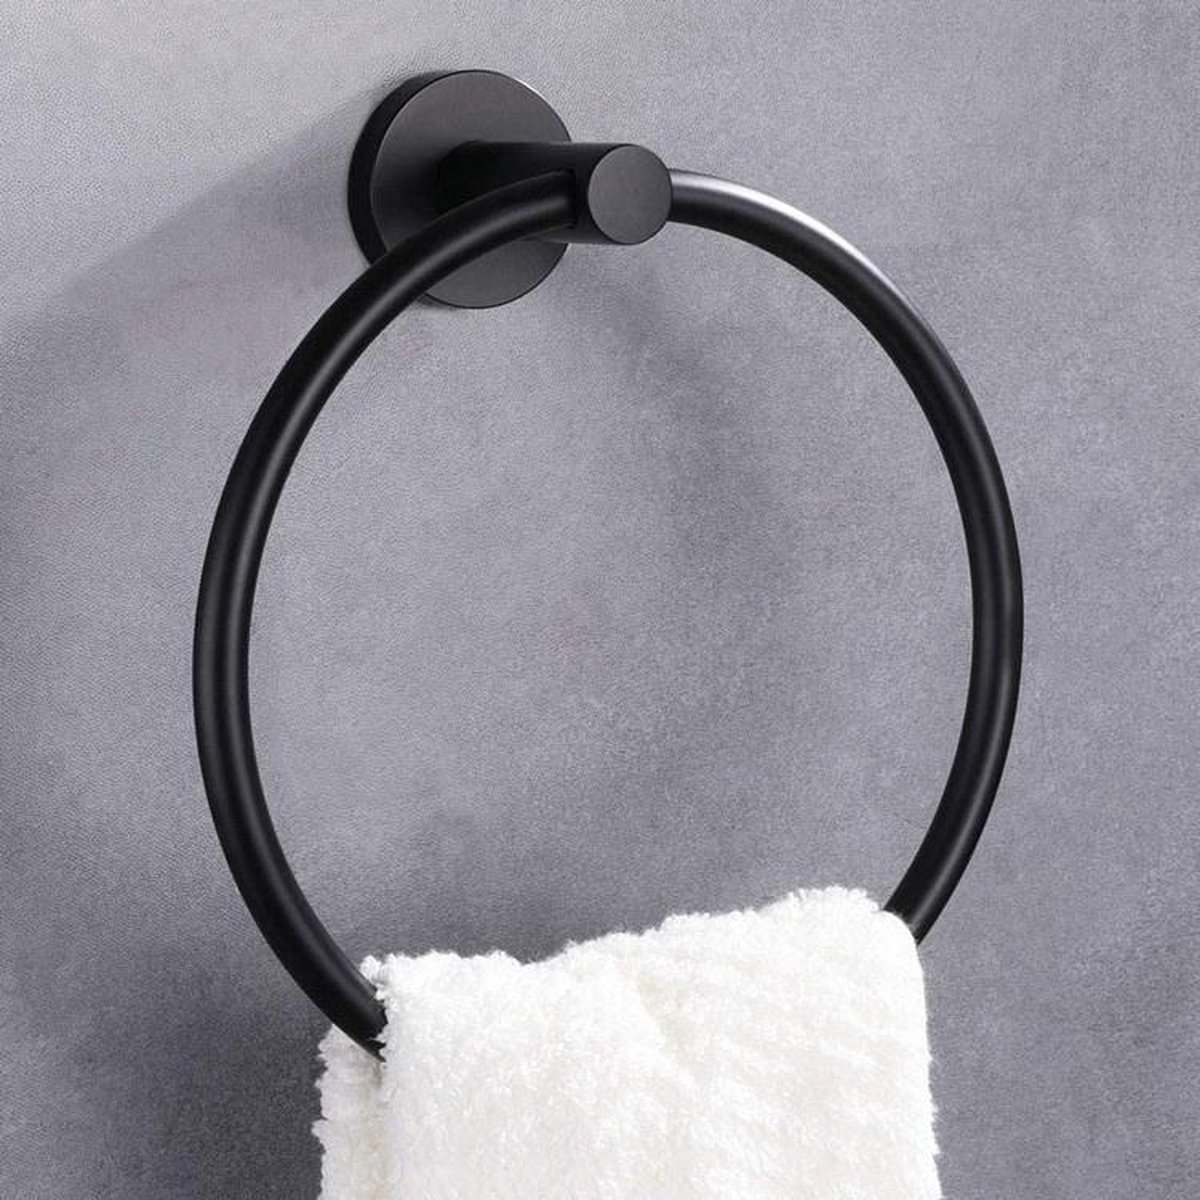 Handdoekring Zwart - Handdoekrek Zwart - Badkamer Accessoires - Eenvoudig te monteren